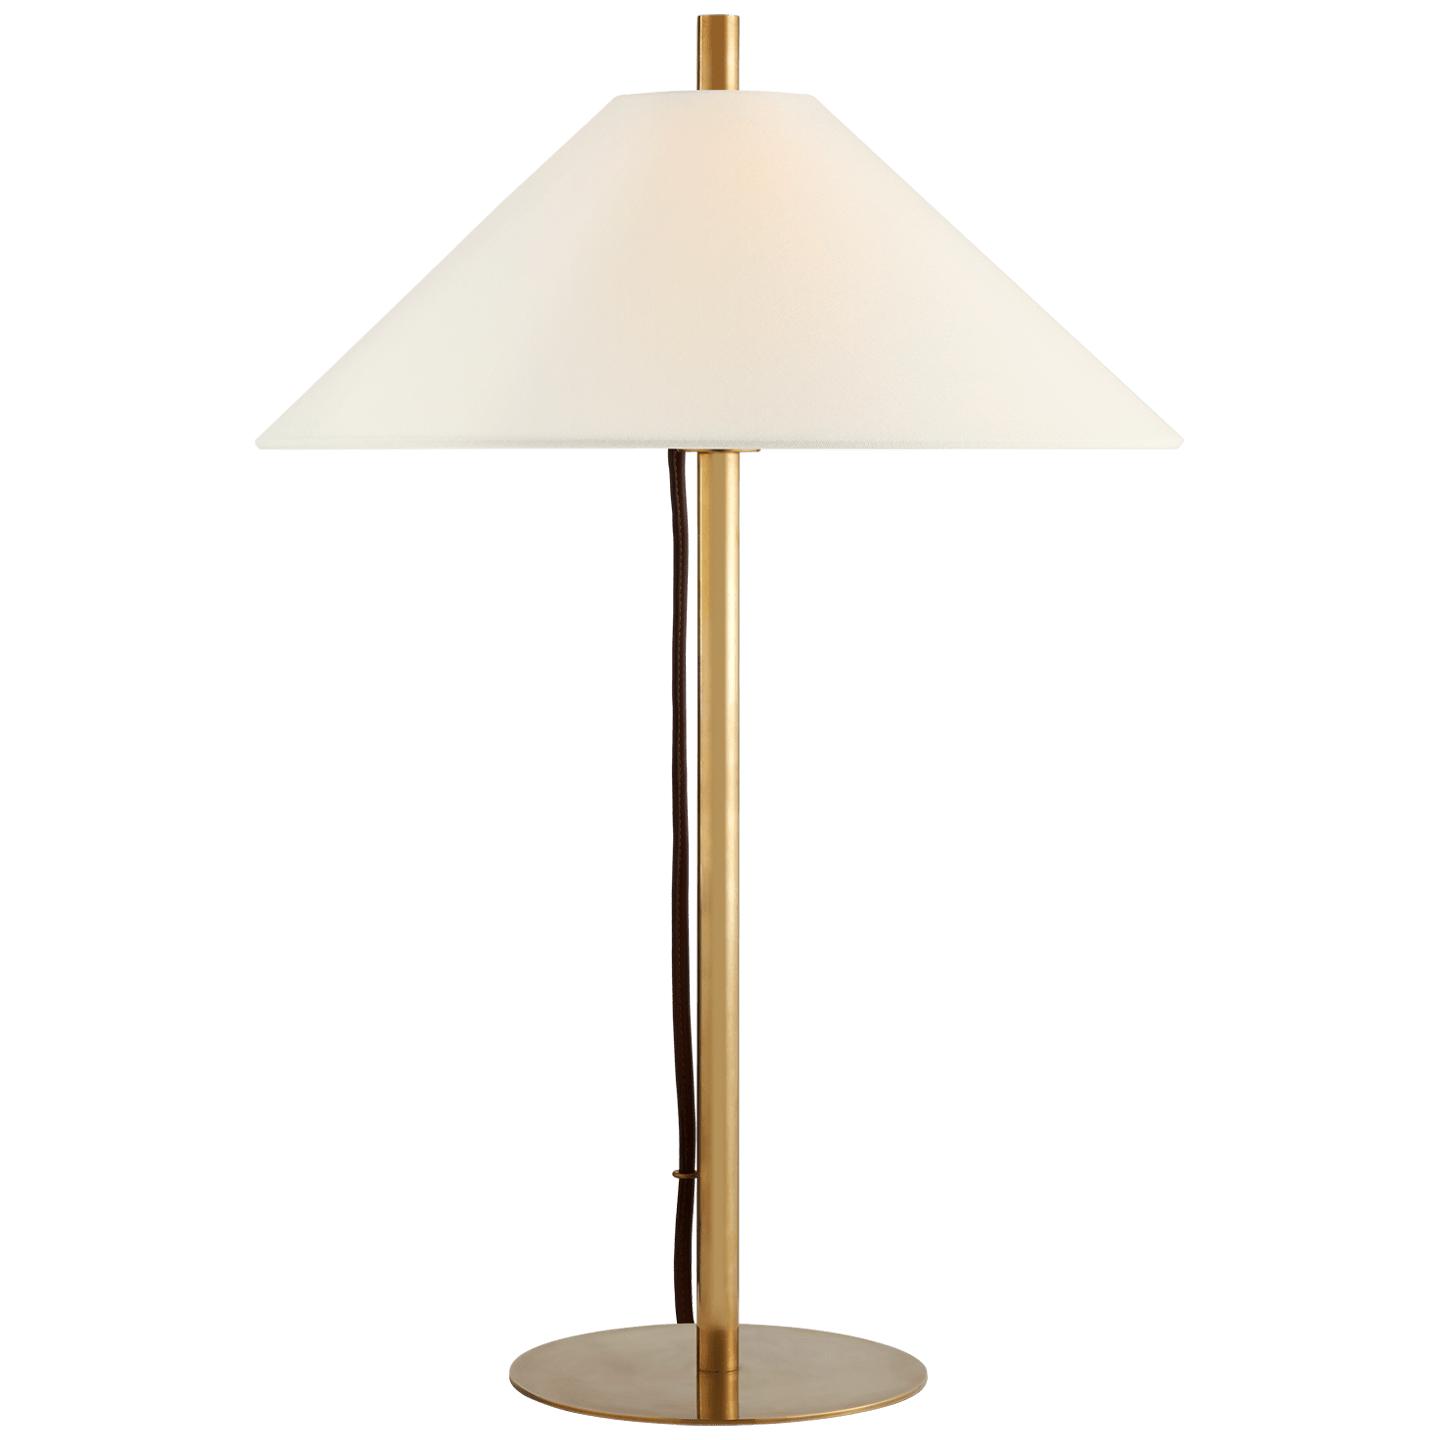 Купить Настольная лампа Dax Medium Table Lamp в интернет-магазине roooms.ru